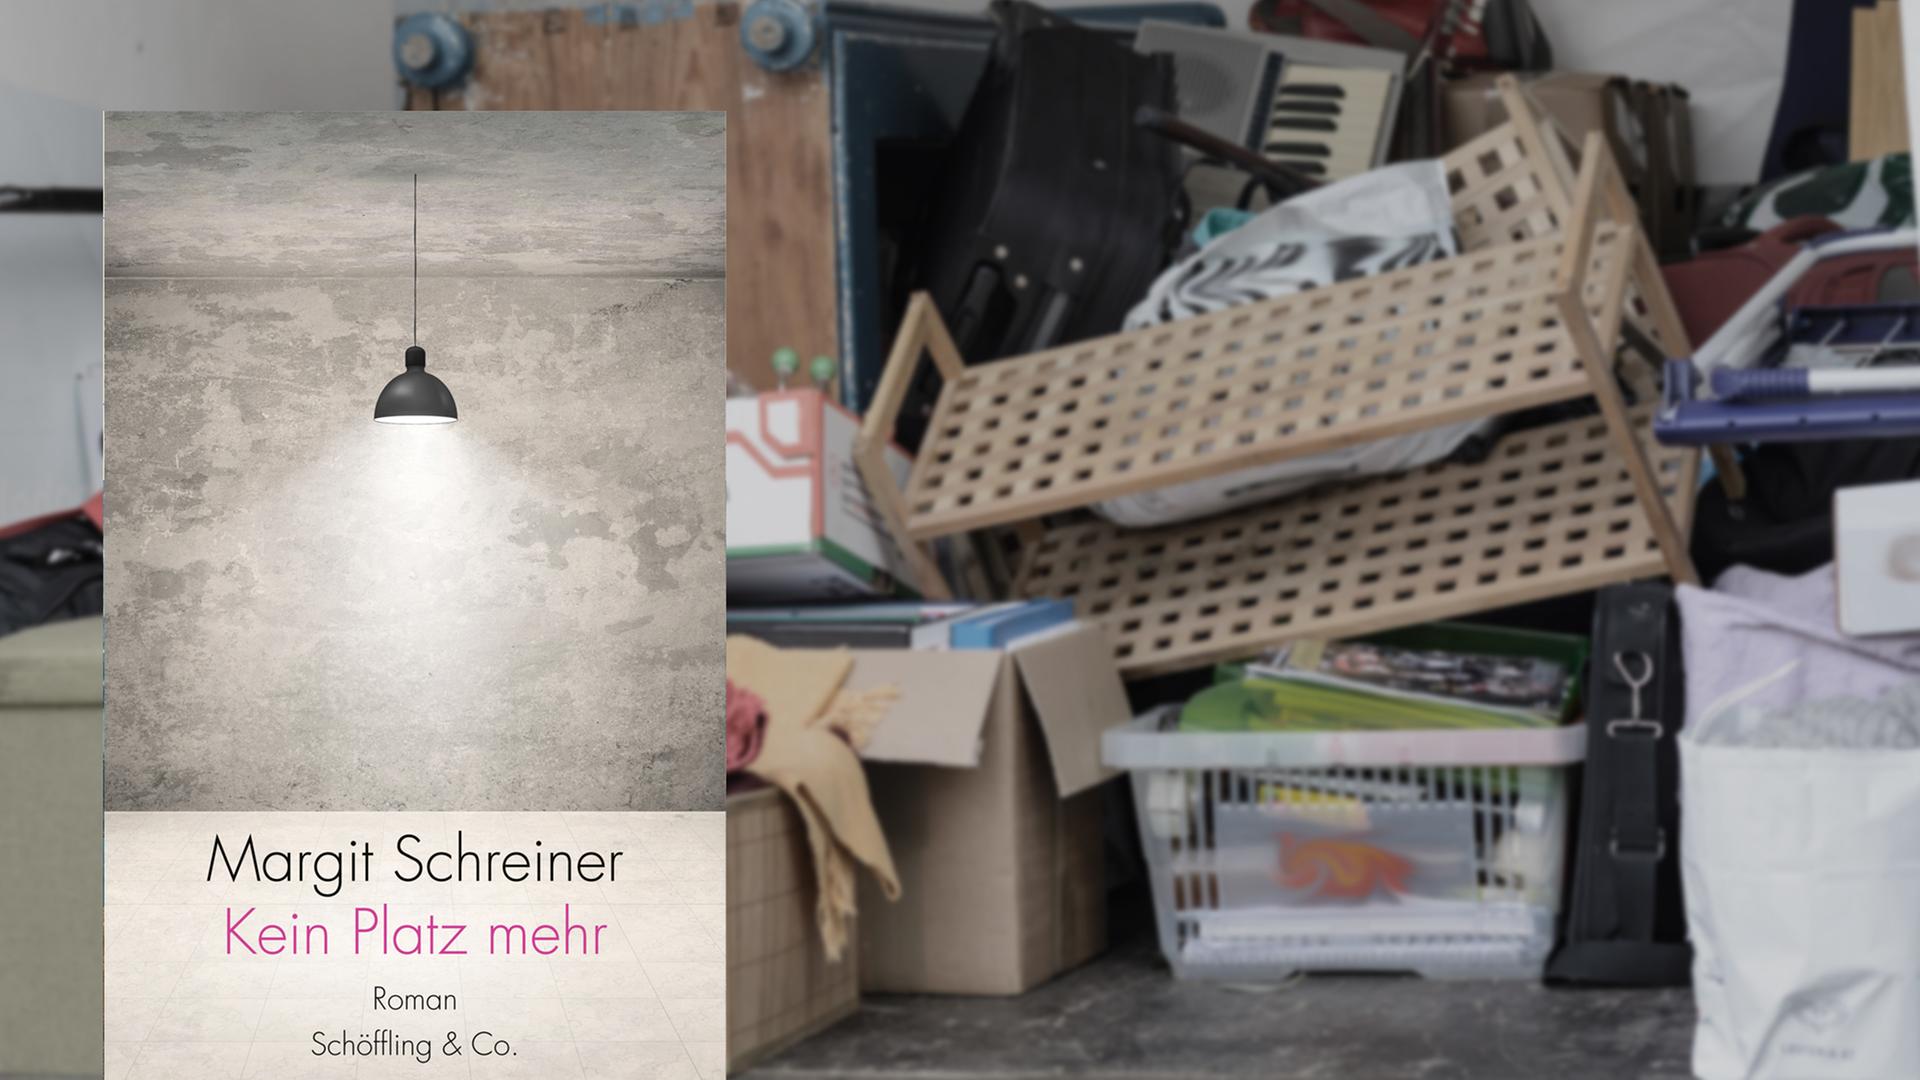 Buchcover von Margit Schreiners Roman "Kein Platz mehr"